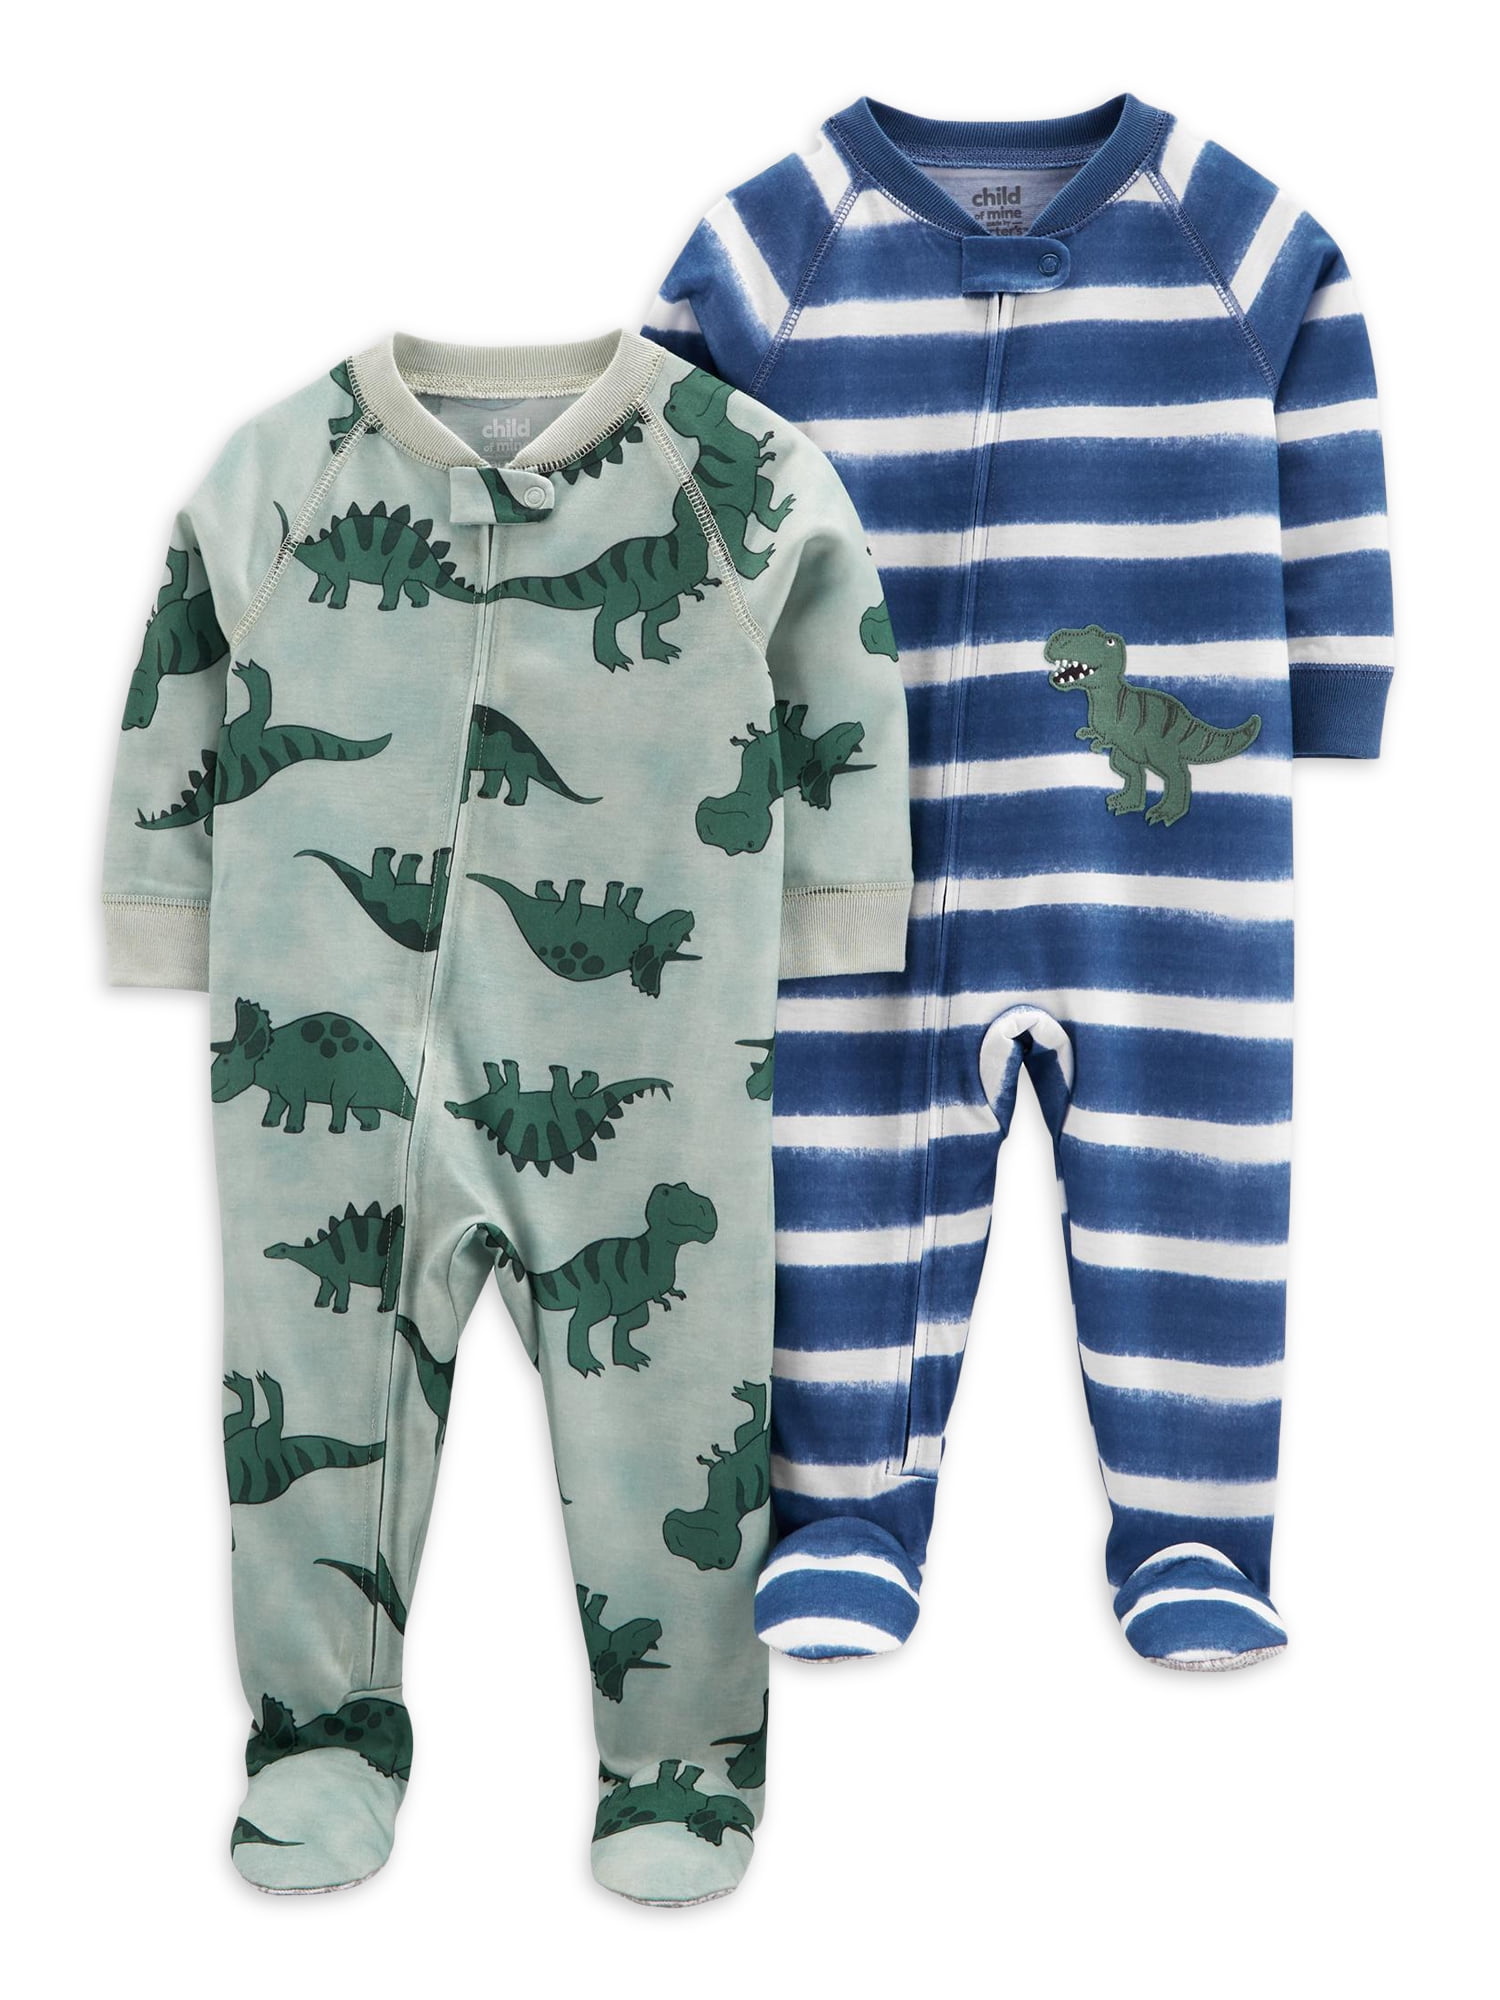 New Toddler Boy Carter's 4 Piece Shark Pajama Set 3 4 5 